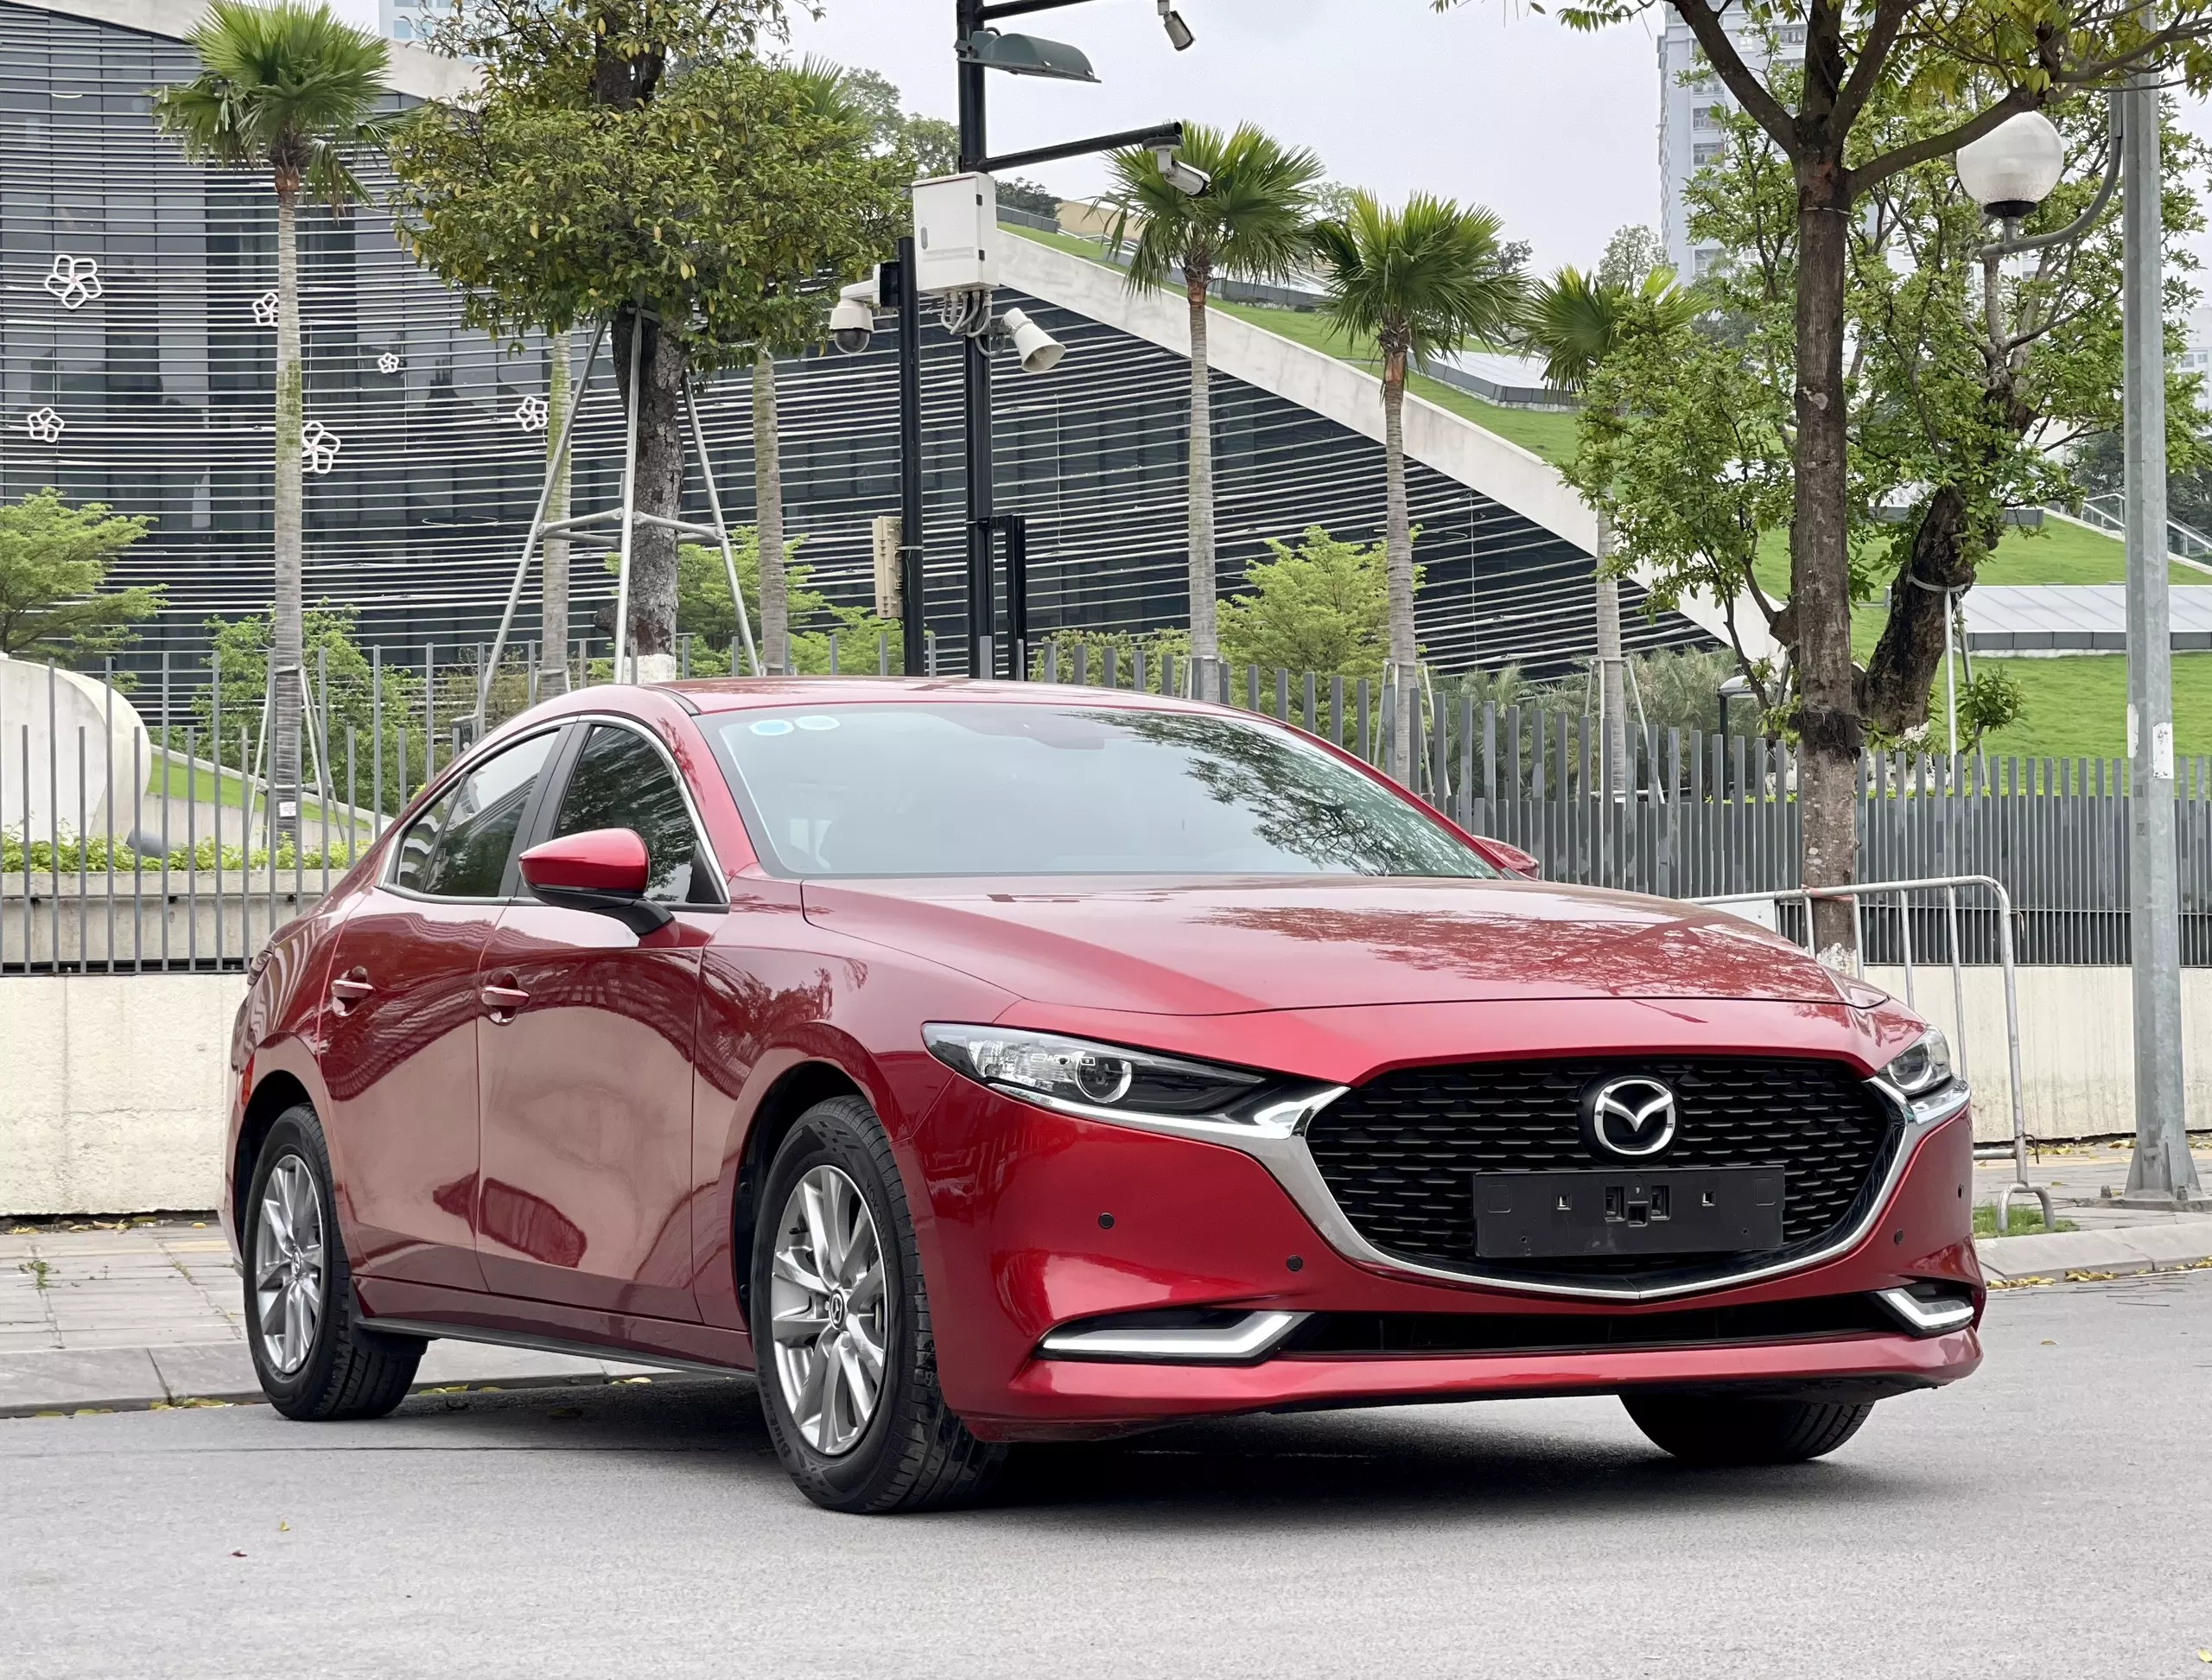 Chính chủ cần bán xe Mazda 3-1.5 luxury đỏ phale -1